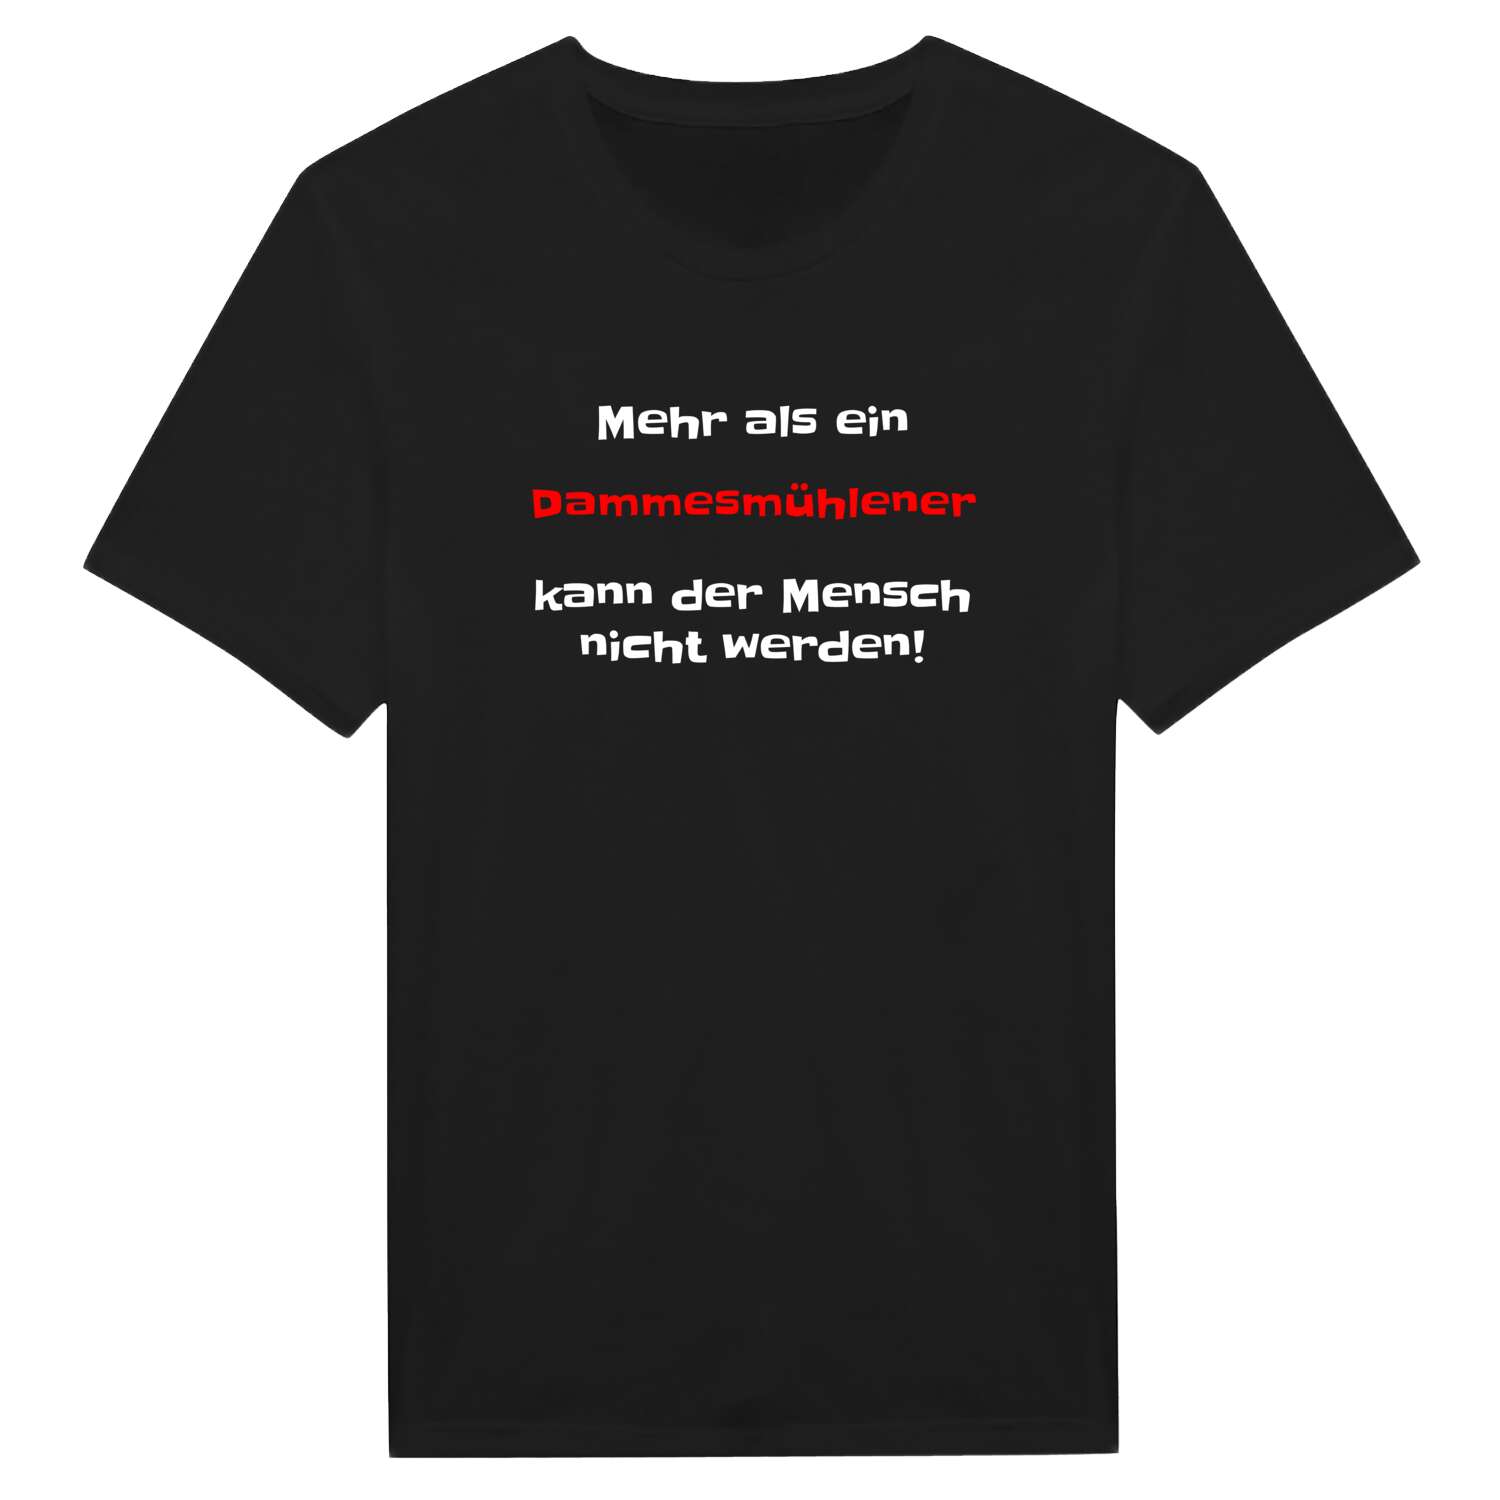 Dammesmühle T-Shirt »Mehr als ein«